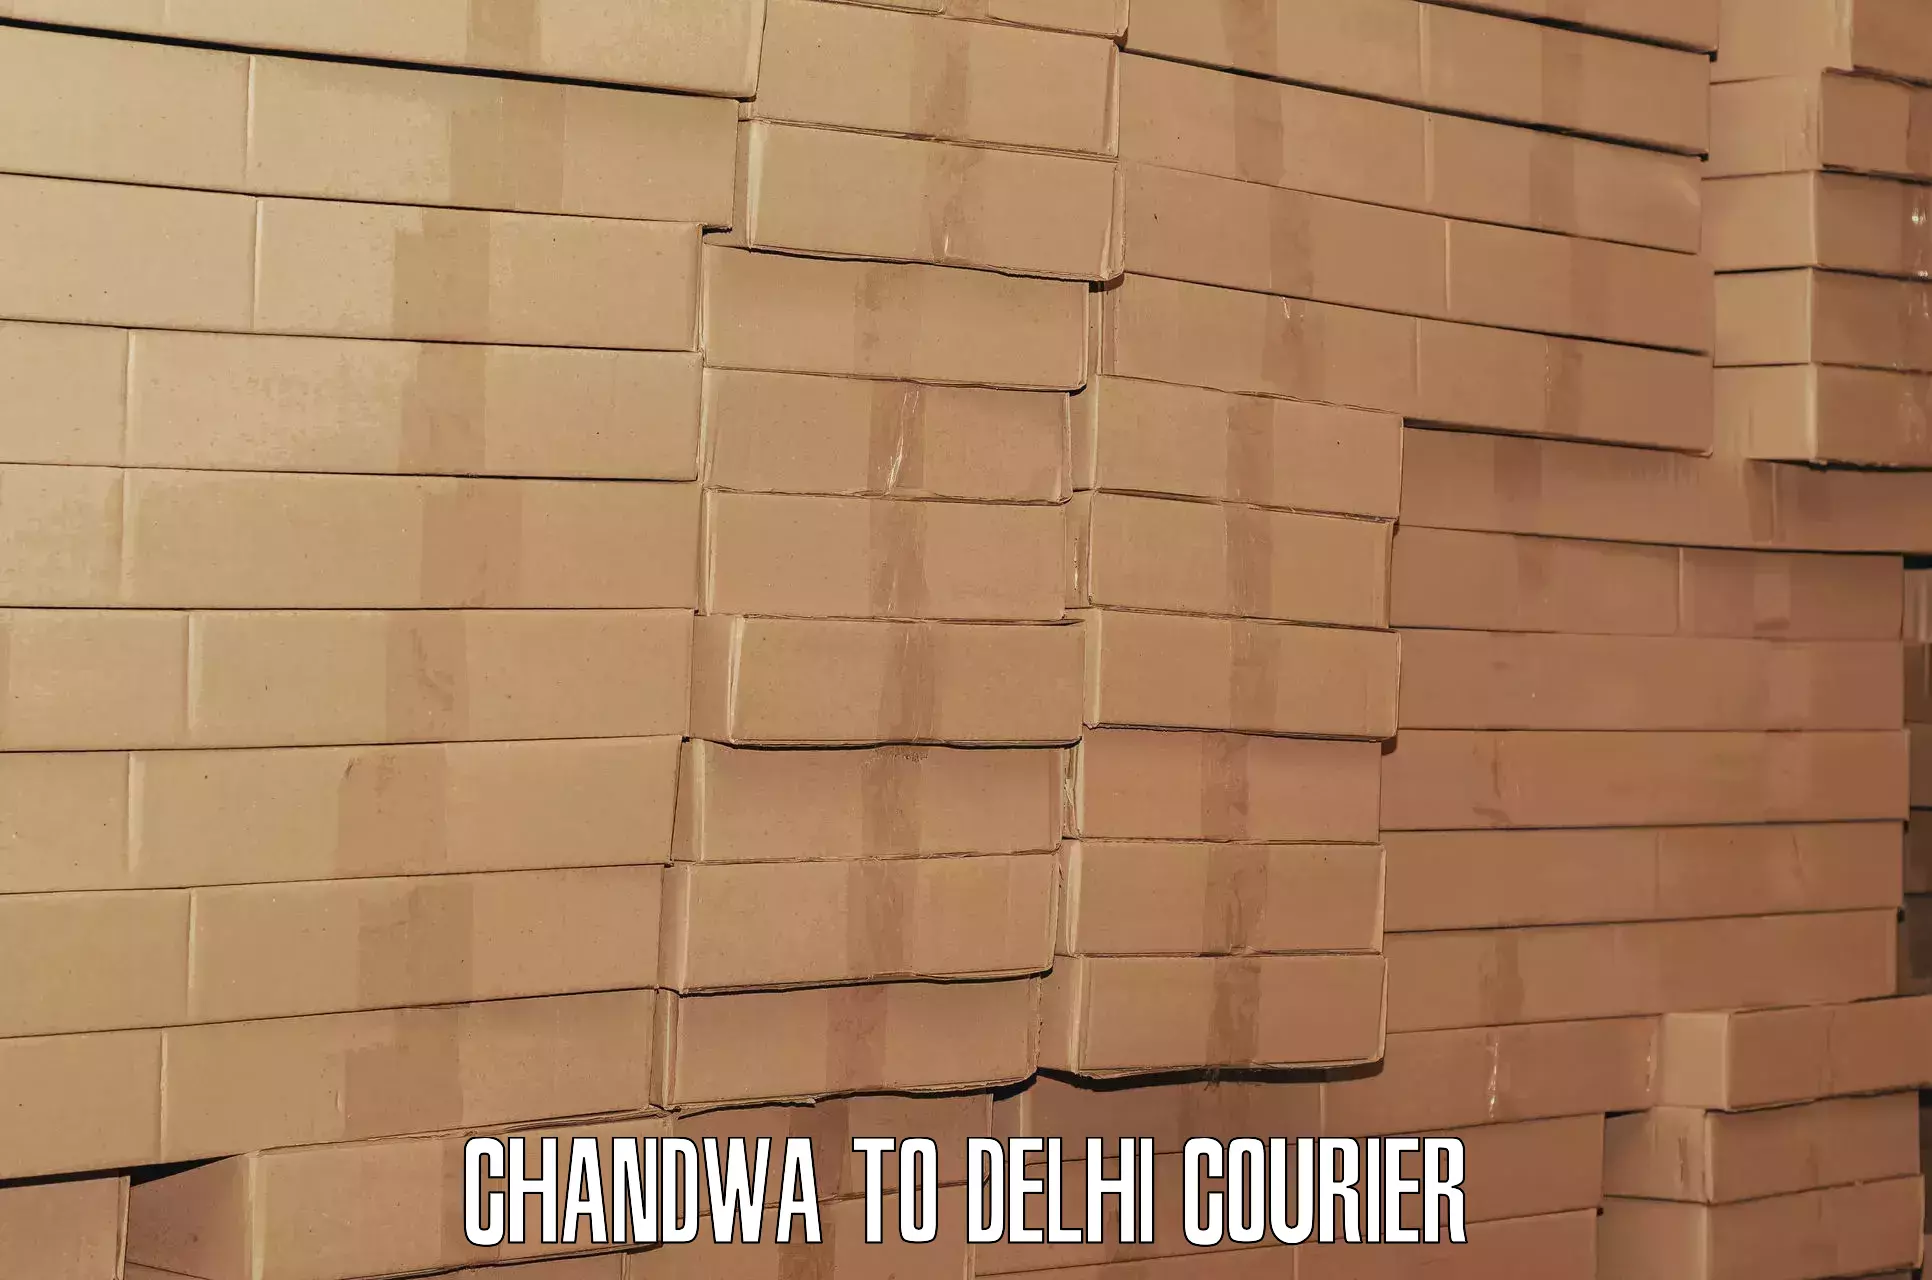 Train station baggage courier Chandwa to Jamia Millia Islamia New Delhi